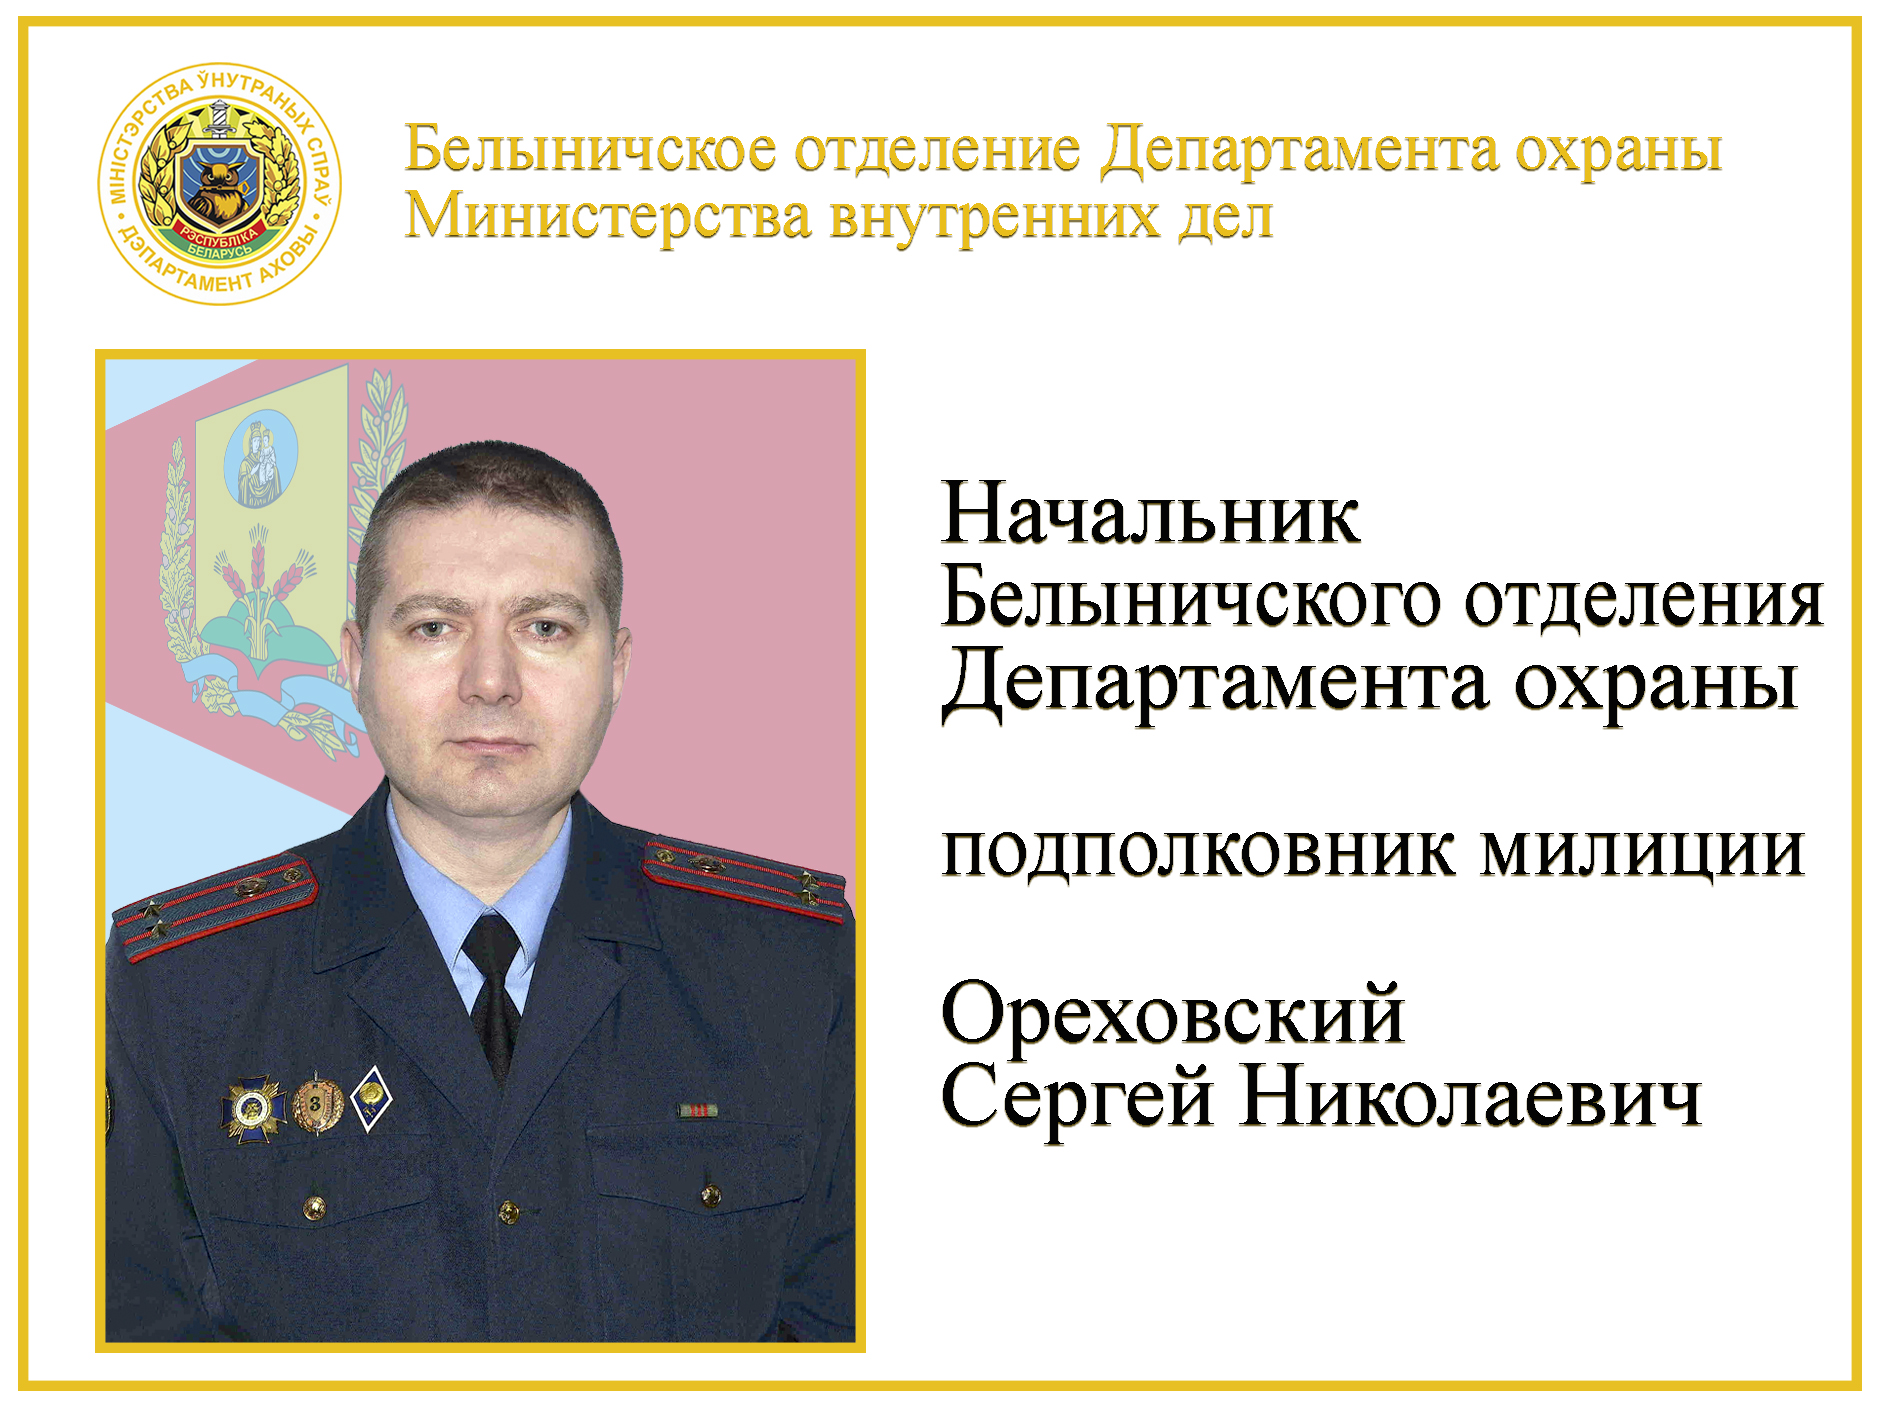 подполковник милиции Ореховский С.Н.